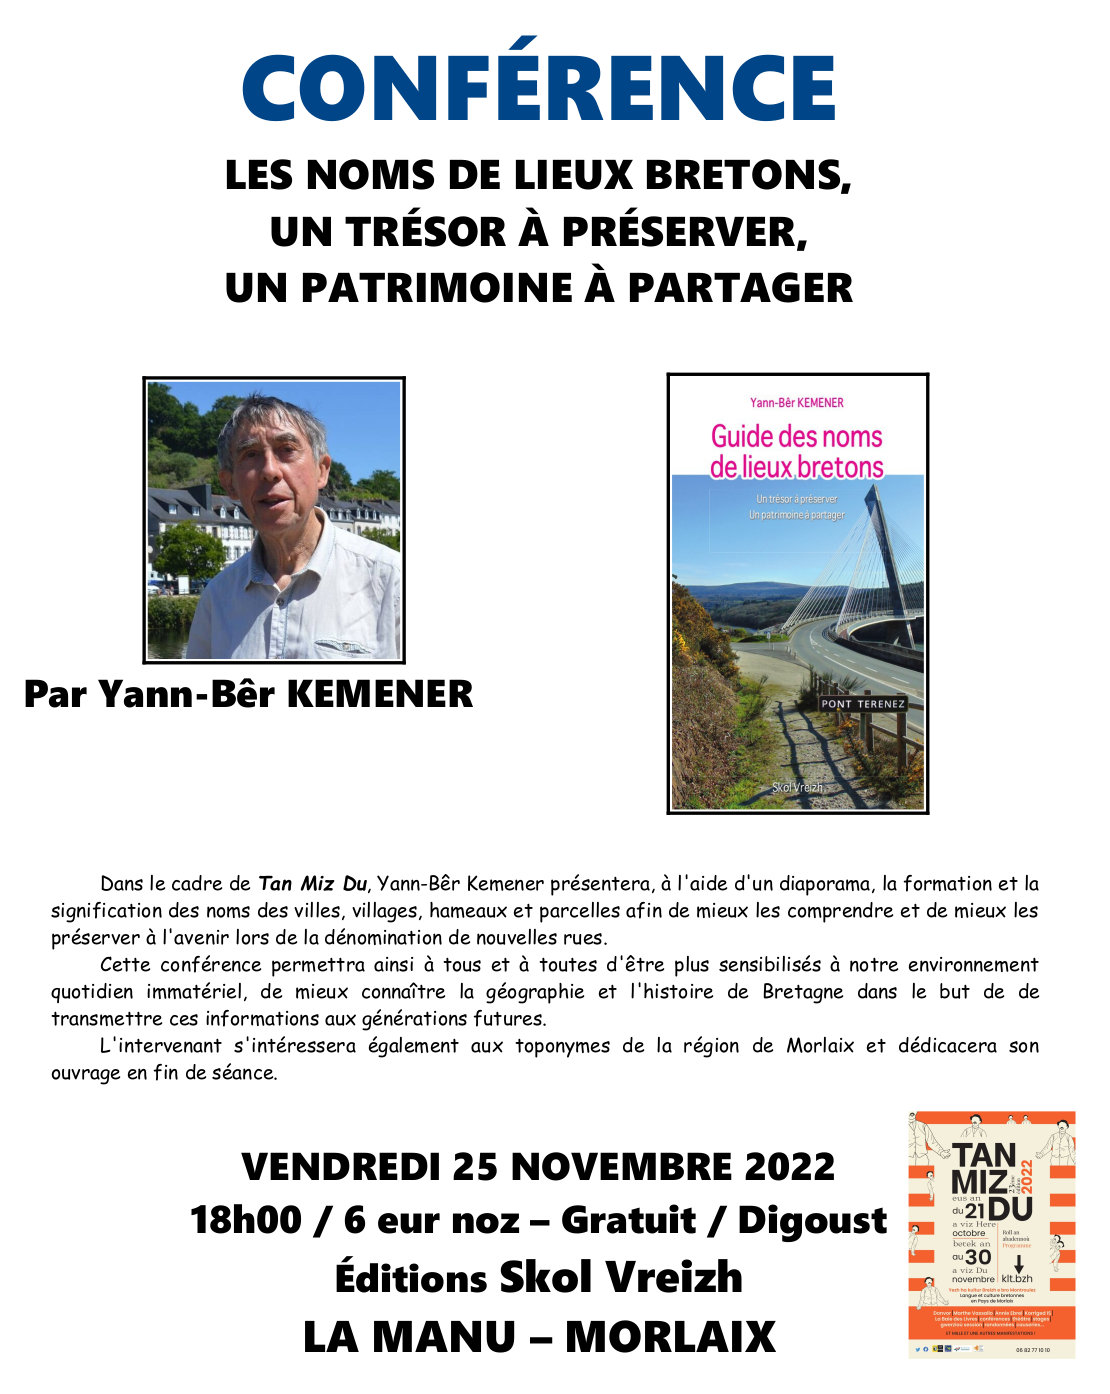 Conférence sur les noms de lieux bretons